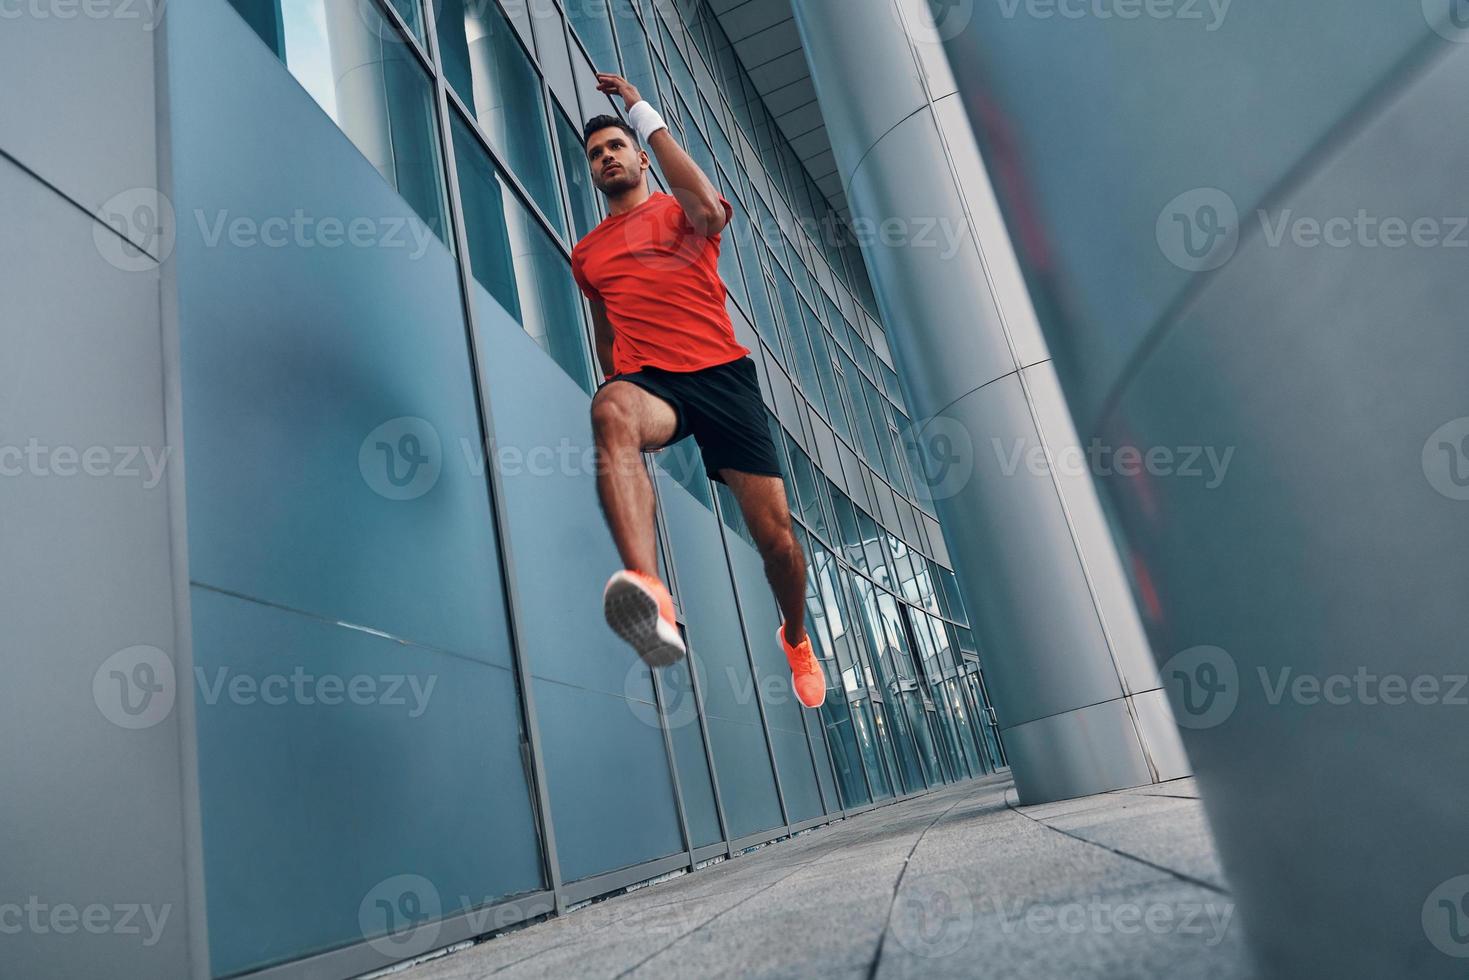 comprimento total de jovem confiante em roupas esportivas pairando no ar enquanto se exercita ao ar livre foto